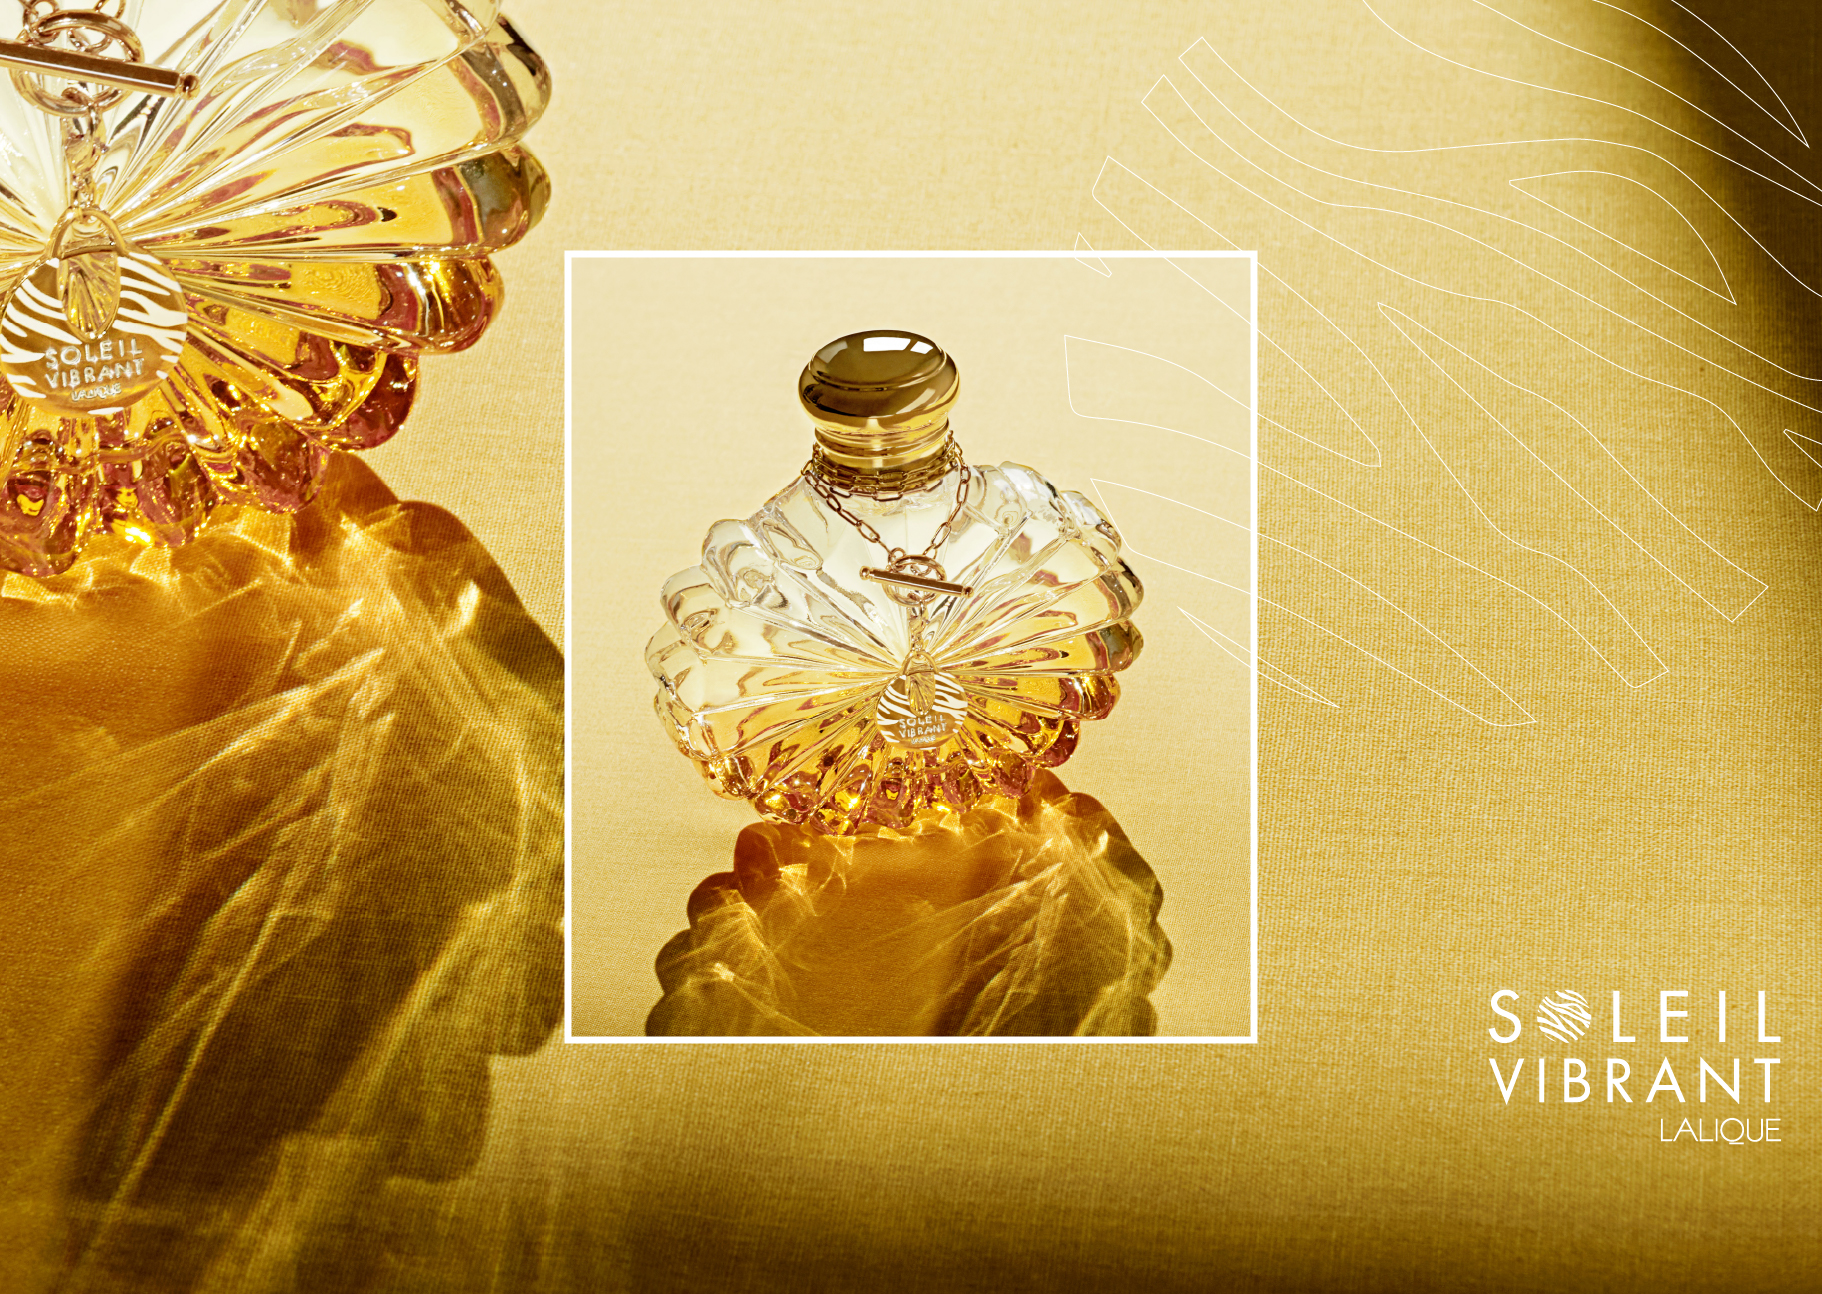 Soleil vibrant Lalique flacon parfum